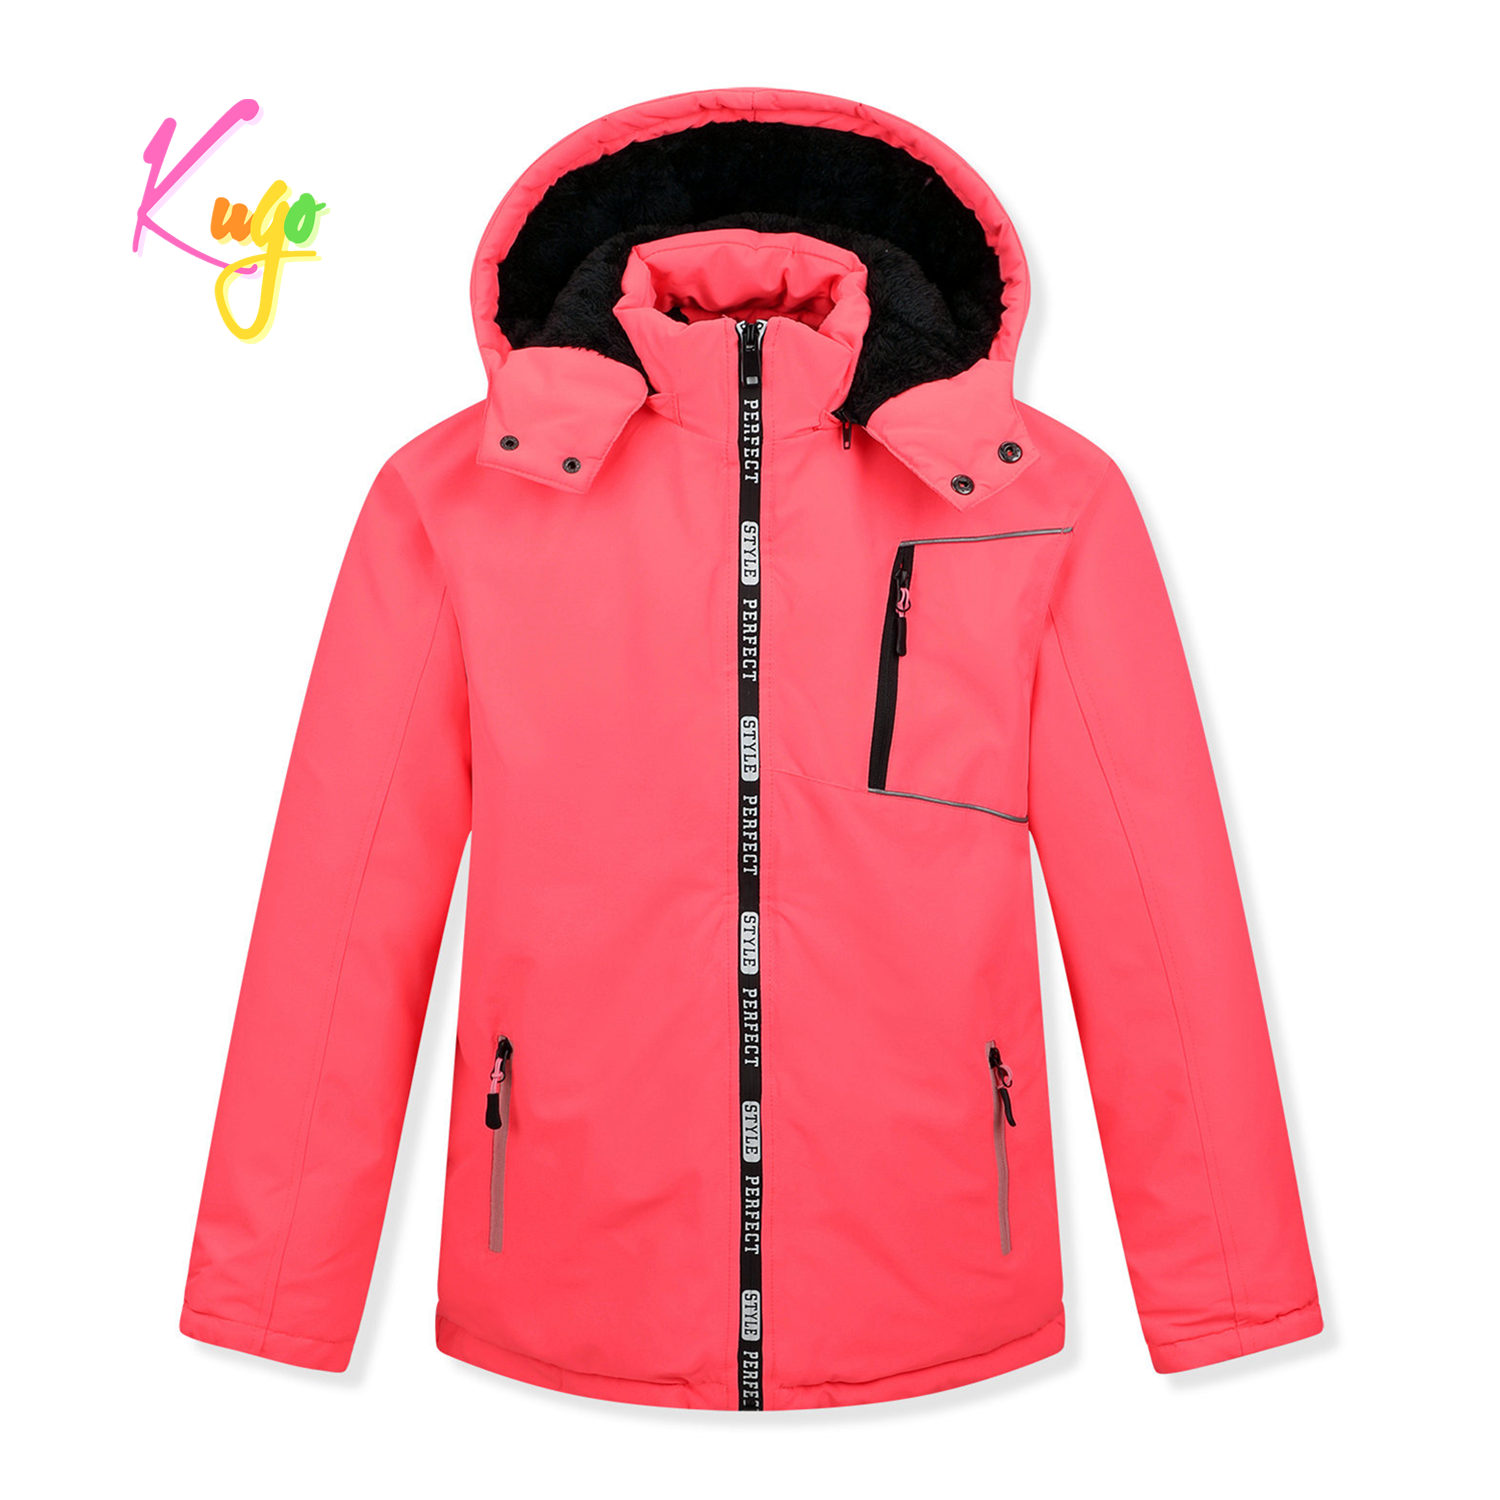 Dívčí zimní bunda - KUGO BU610, neonově lososová Barva: Lososová, Velikost: 146